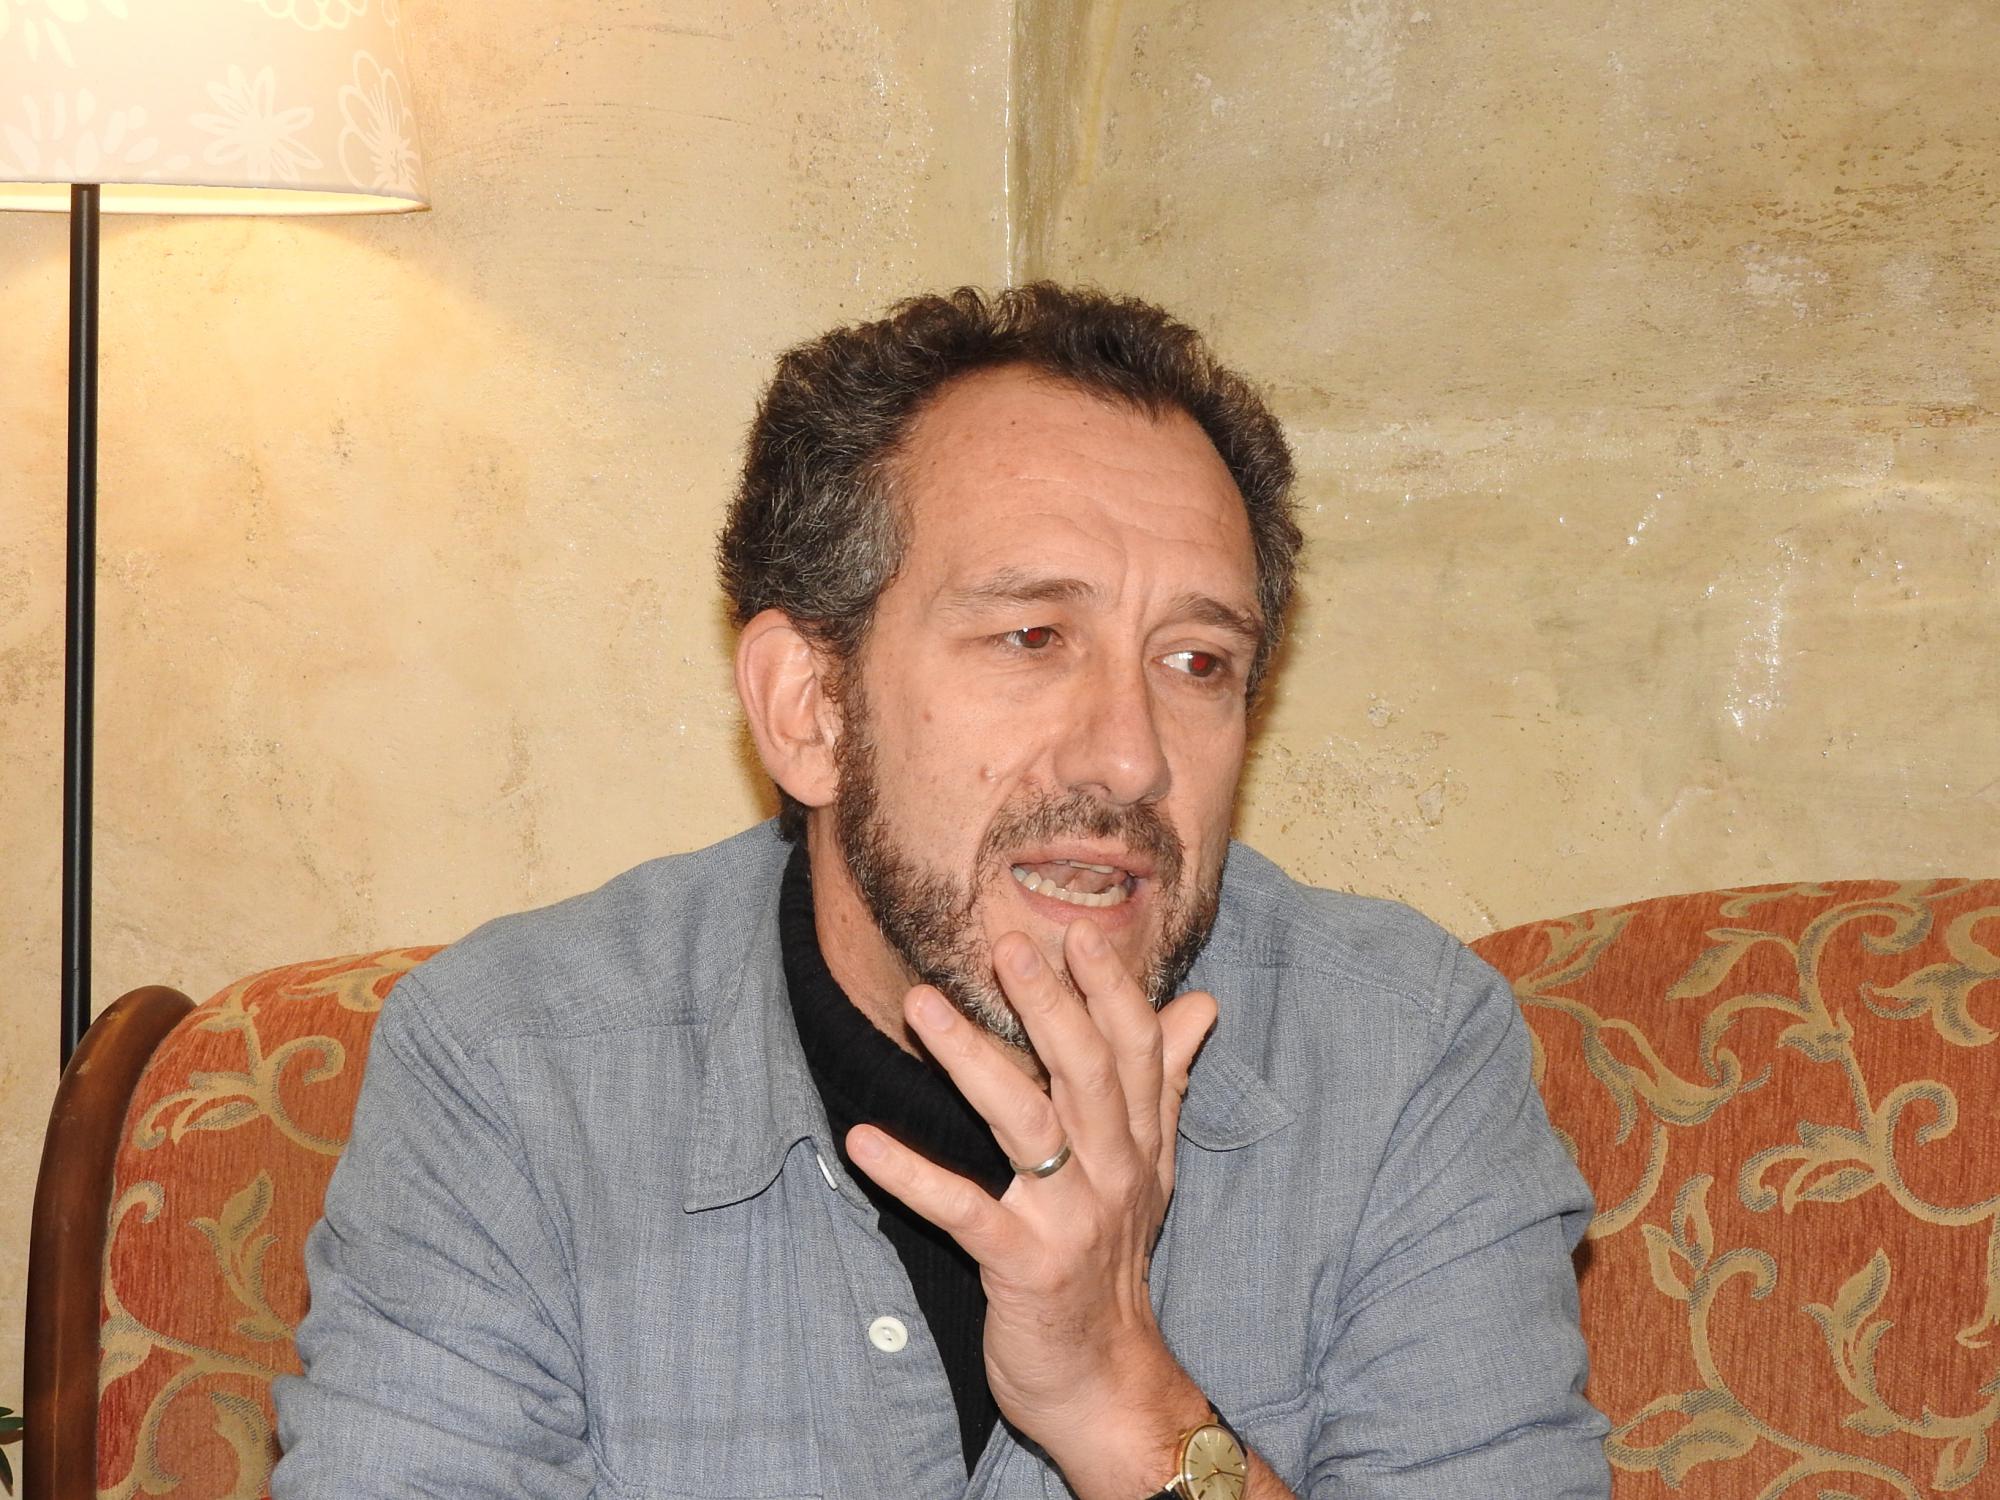 El escritor Ricardo Menéndez Salmón gana el primer Premio Internacional 'Ramos Ópticos' de relatos que convoca el Jazz Palencia Festival